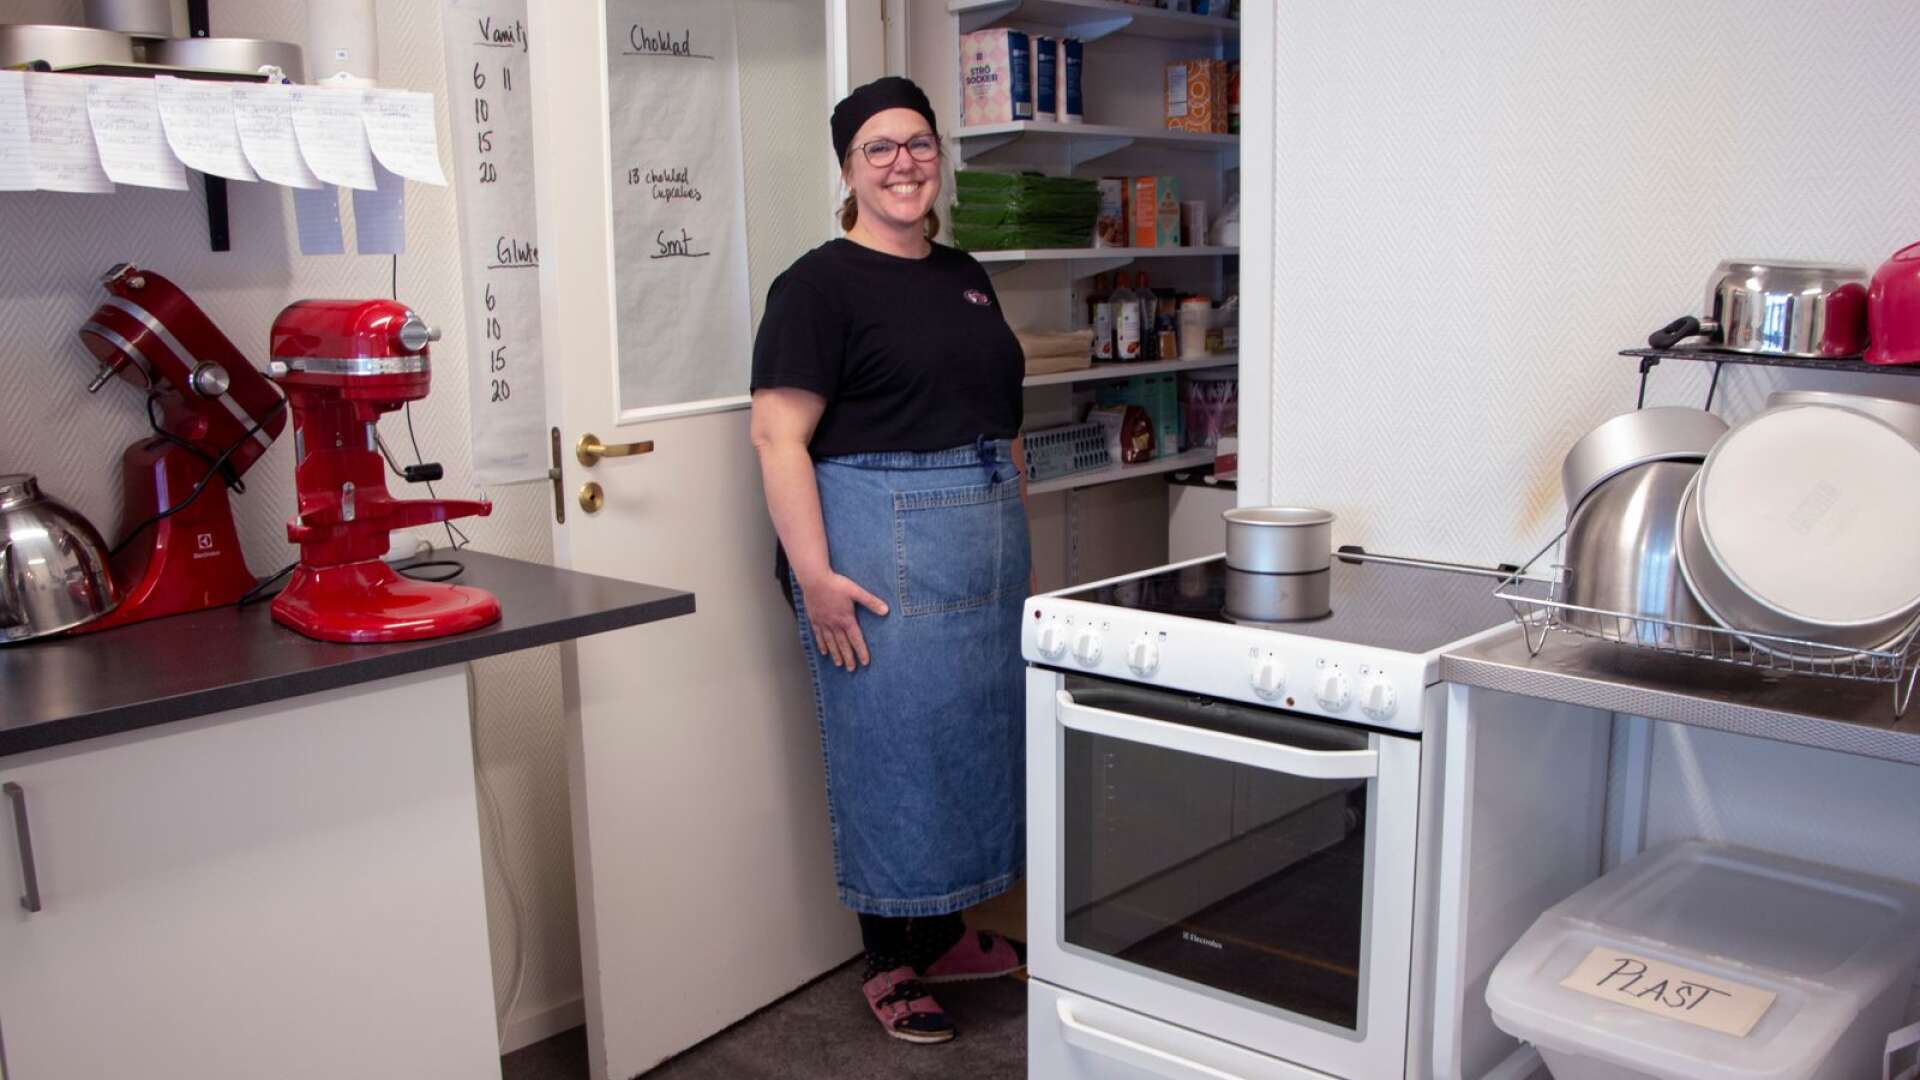 Tårtpinglan Lisa Tyrenhag i köket där alla tårtor och bakverk skapas i den lilla ugnen bredvid henne.